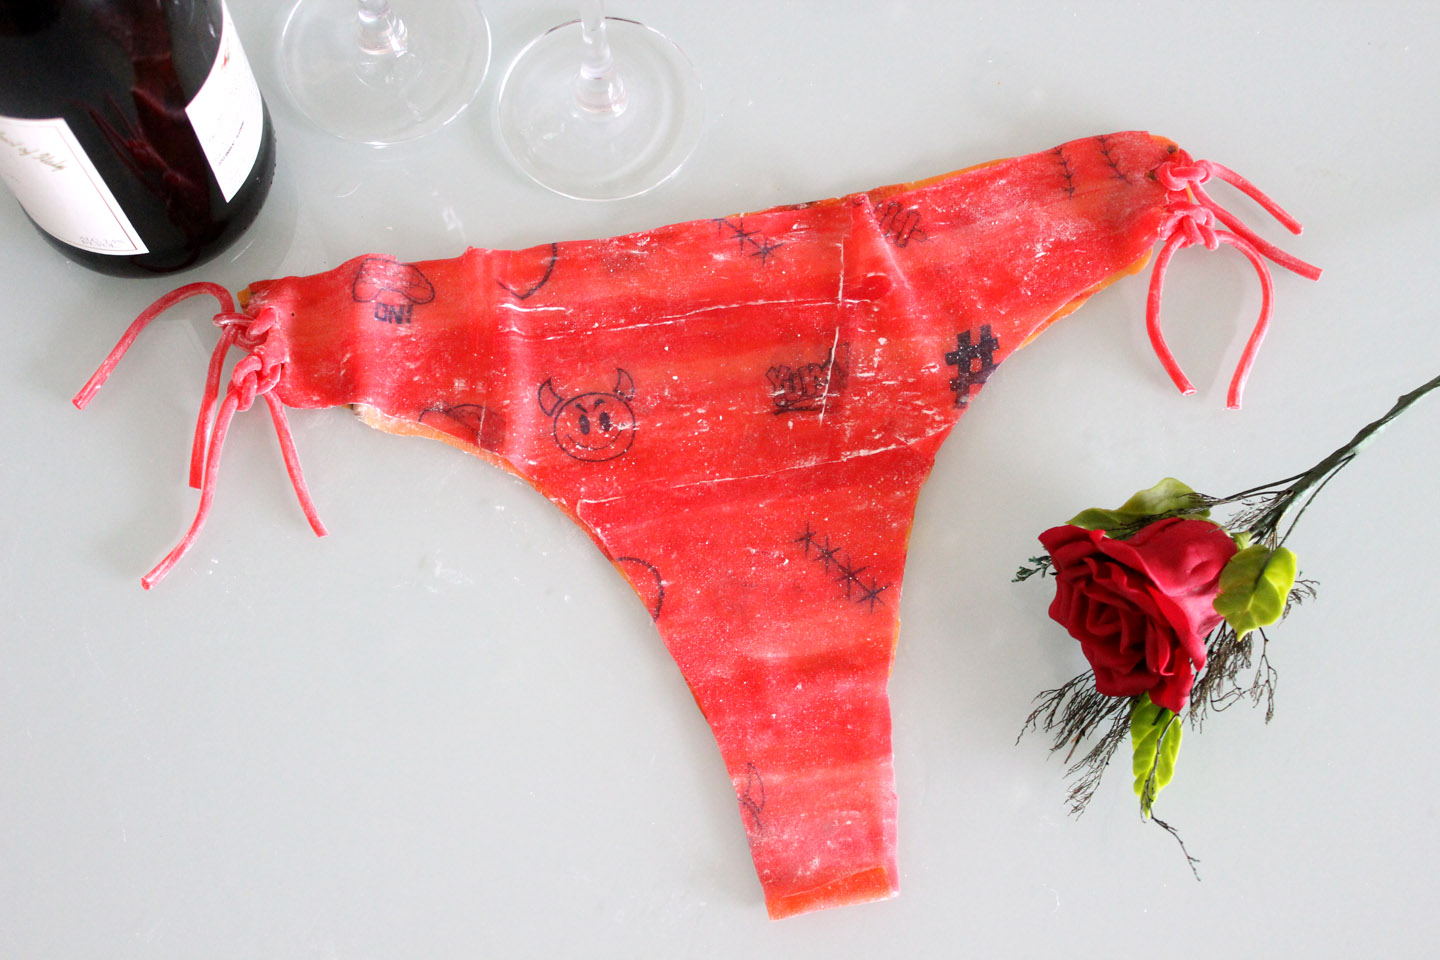 DIY Edible Panties vs. Store Bought Edible Underwear For